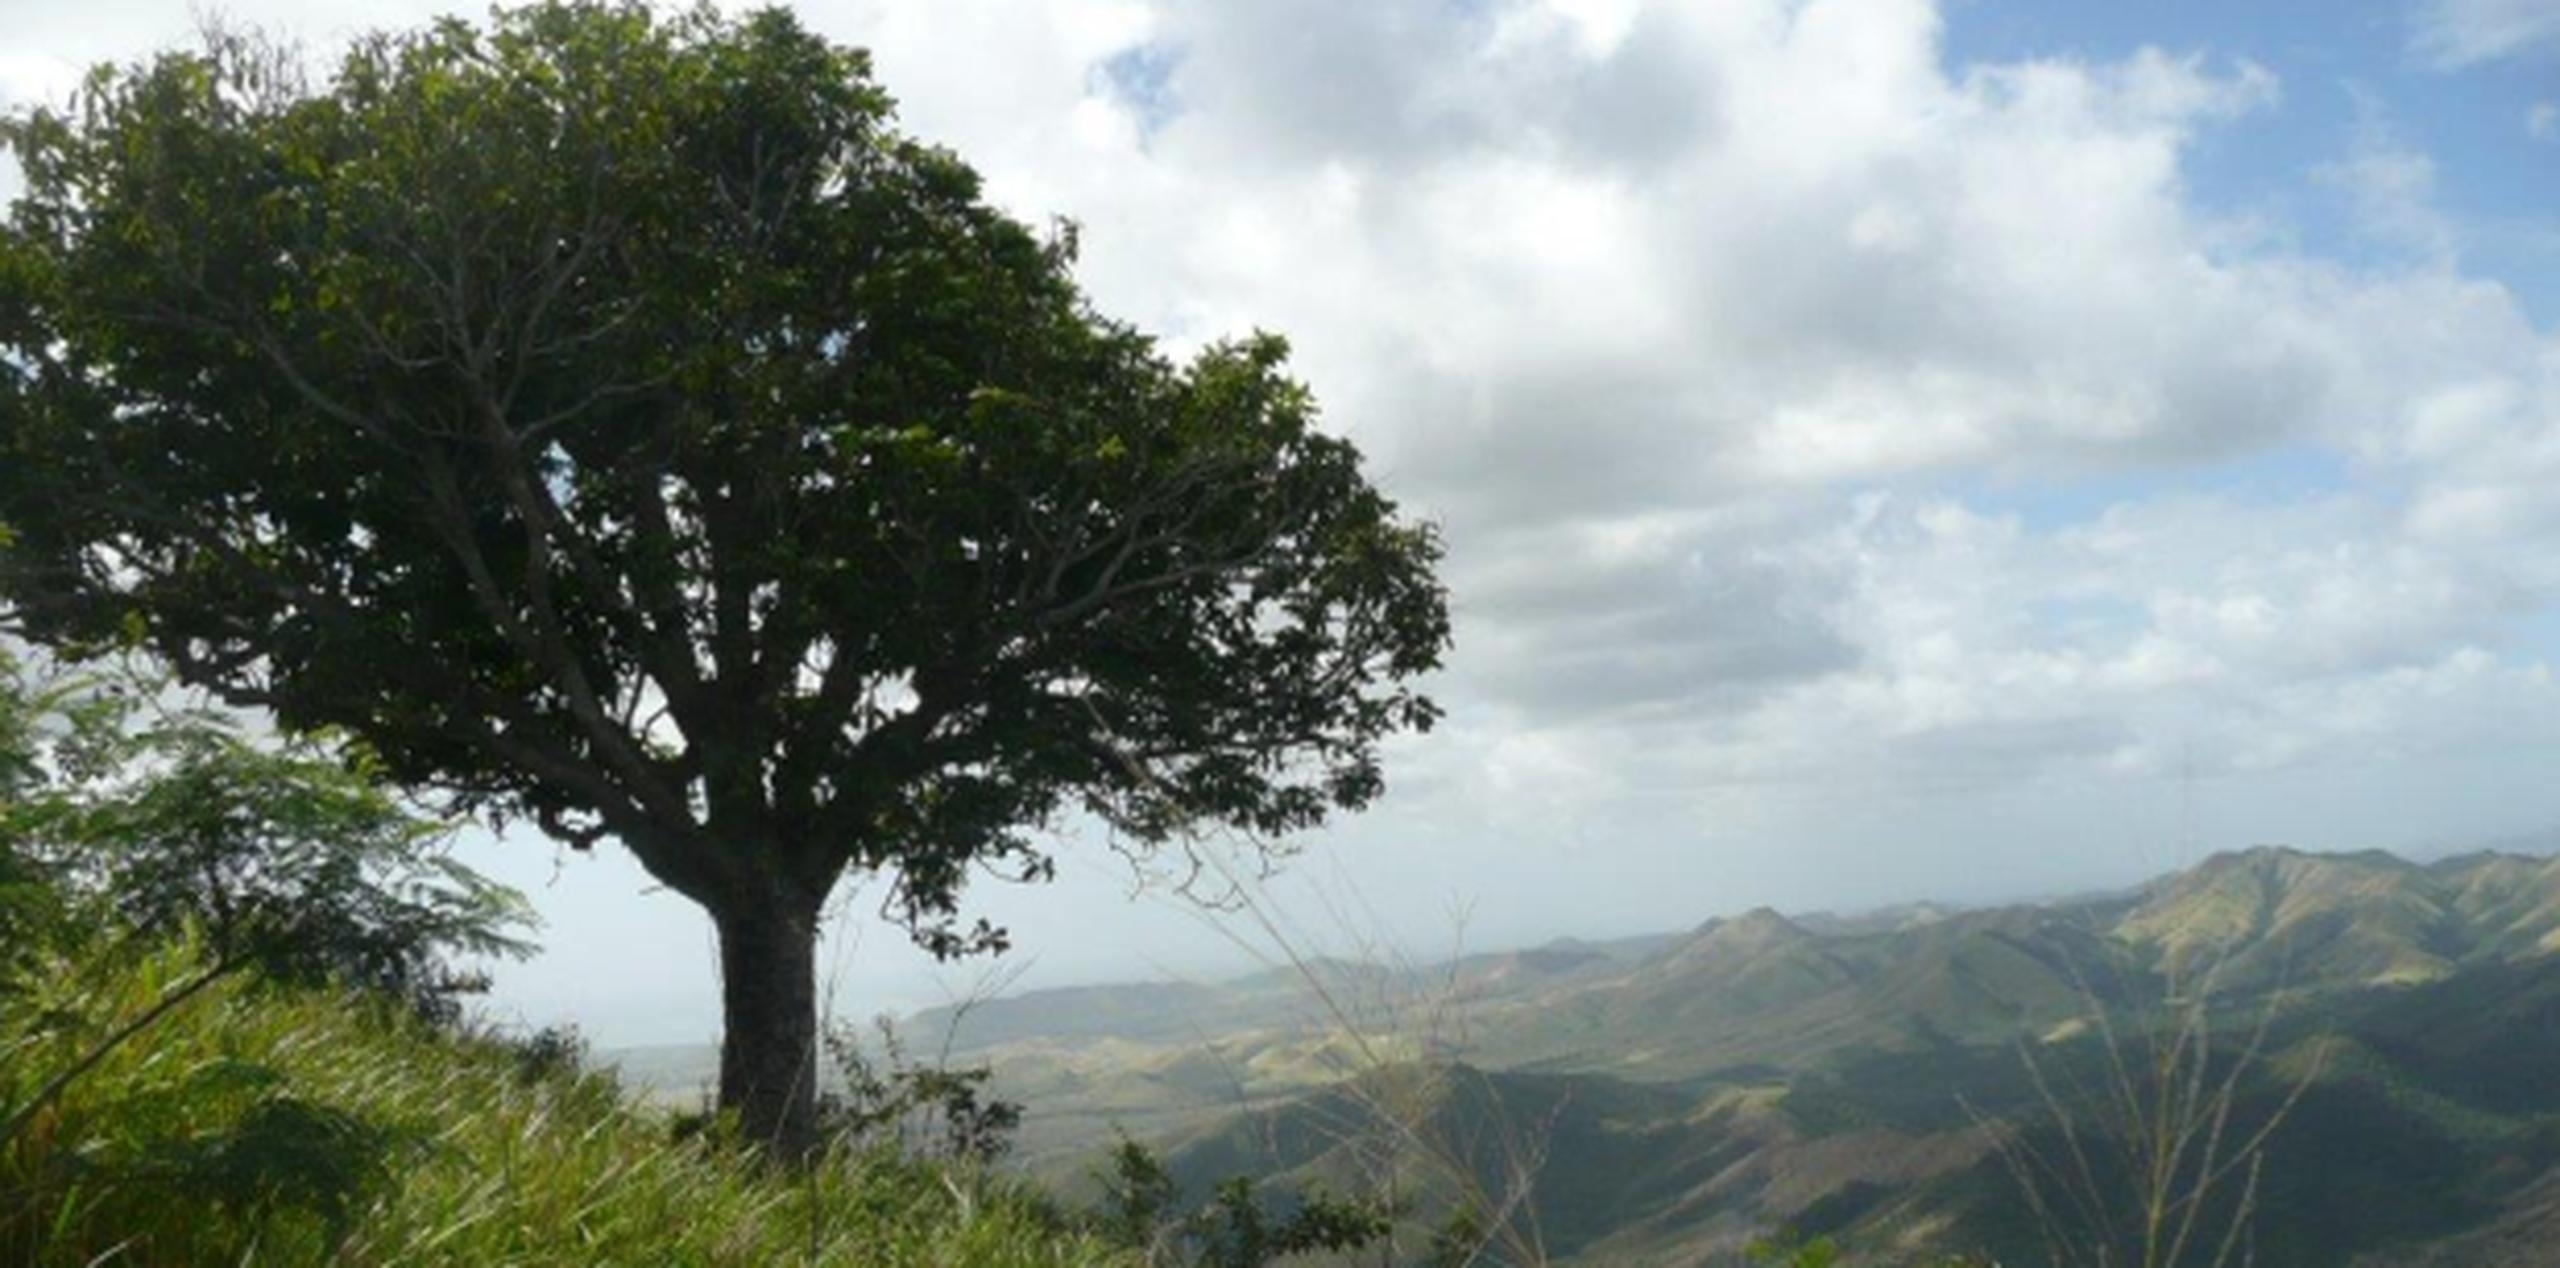 Para llegar al árbol solitario se requiere ingresar a una zona boscosa por fincas privadas y muchos se estacionan ilegalmente en predios cercanos a la autopista. (Archivo)